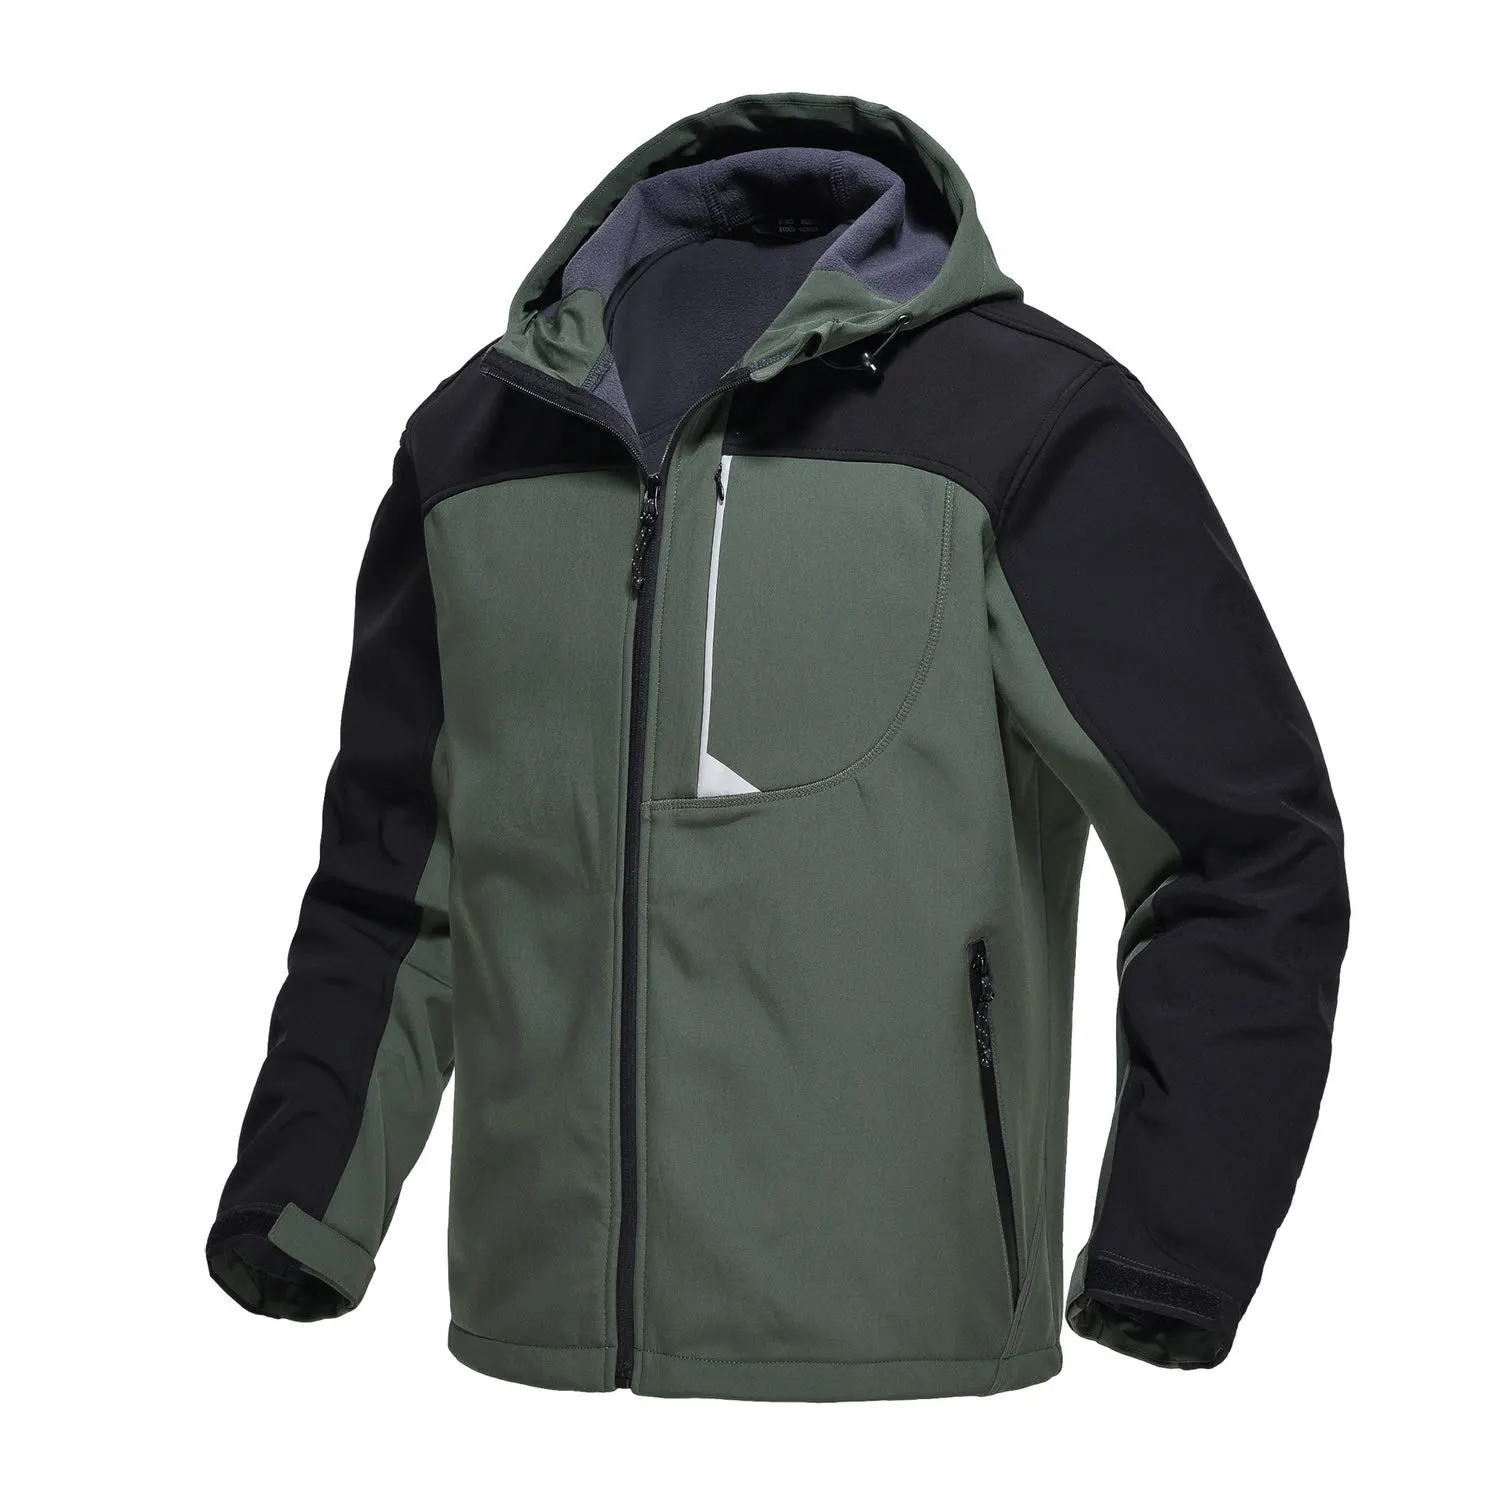 Venta al por mayor de los hombres chaqueta acolchada de invierno de color sólido Softshell chaqueta de bombardero de hombre de alta calidad nueva llegada chaquetas Softshell para la venta